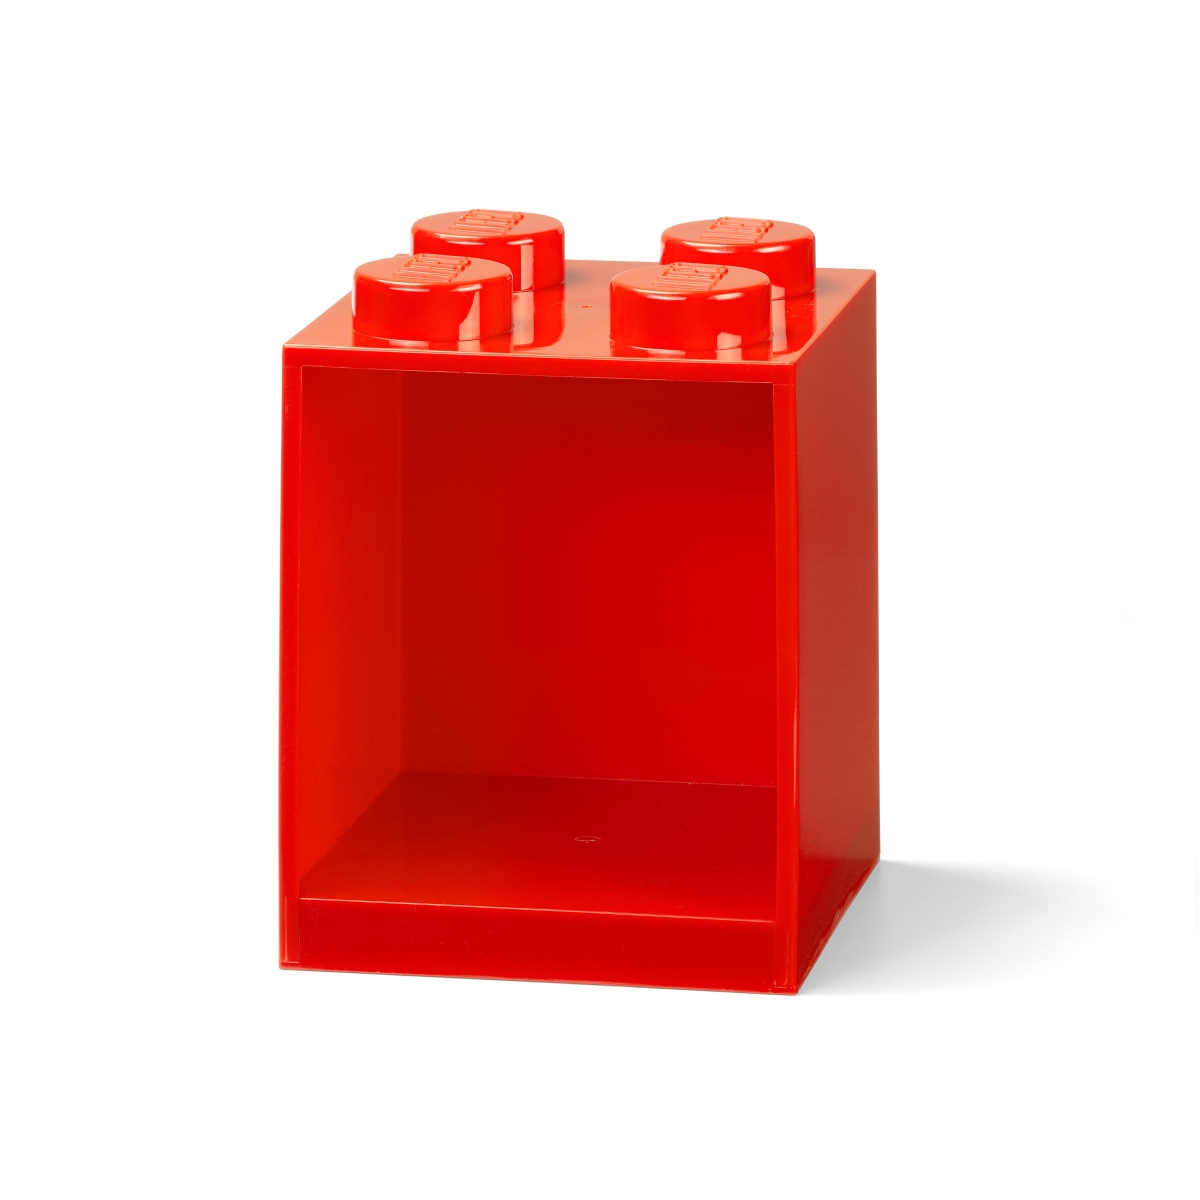 lego 5006578 police ve tvaru kostky se 4 vystupky jasne cervena